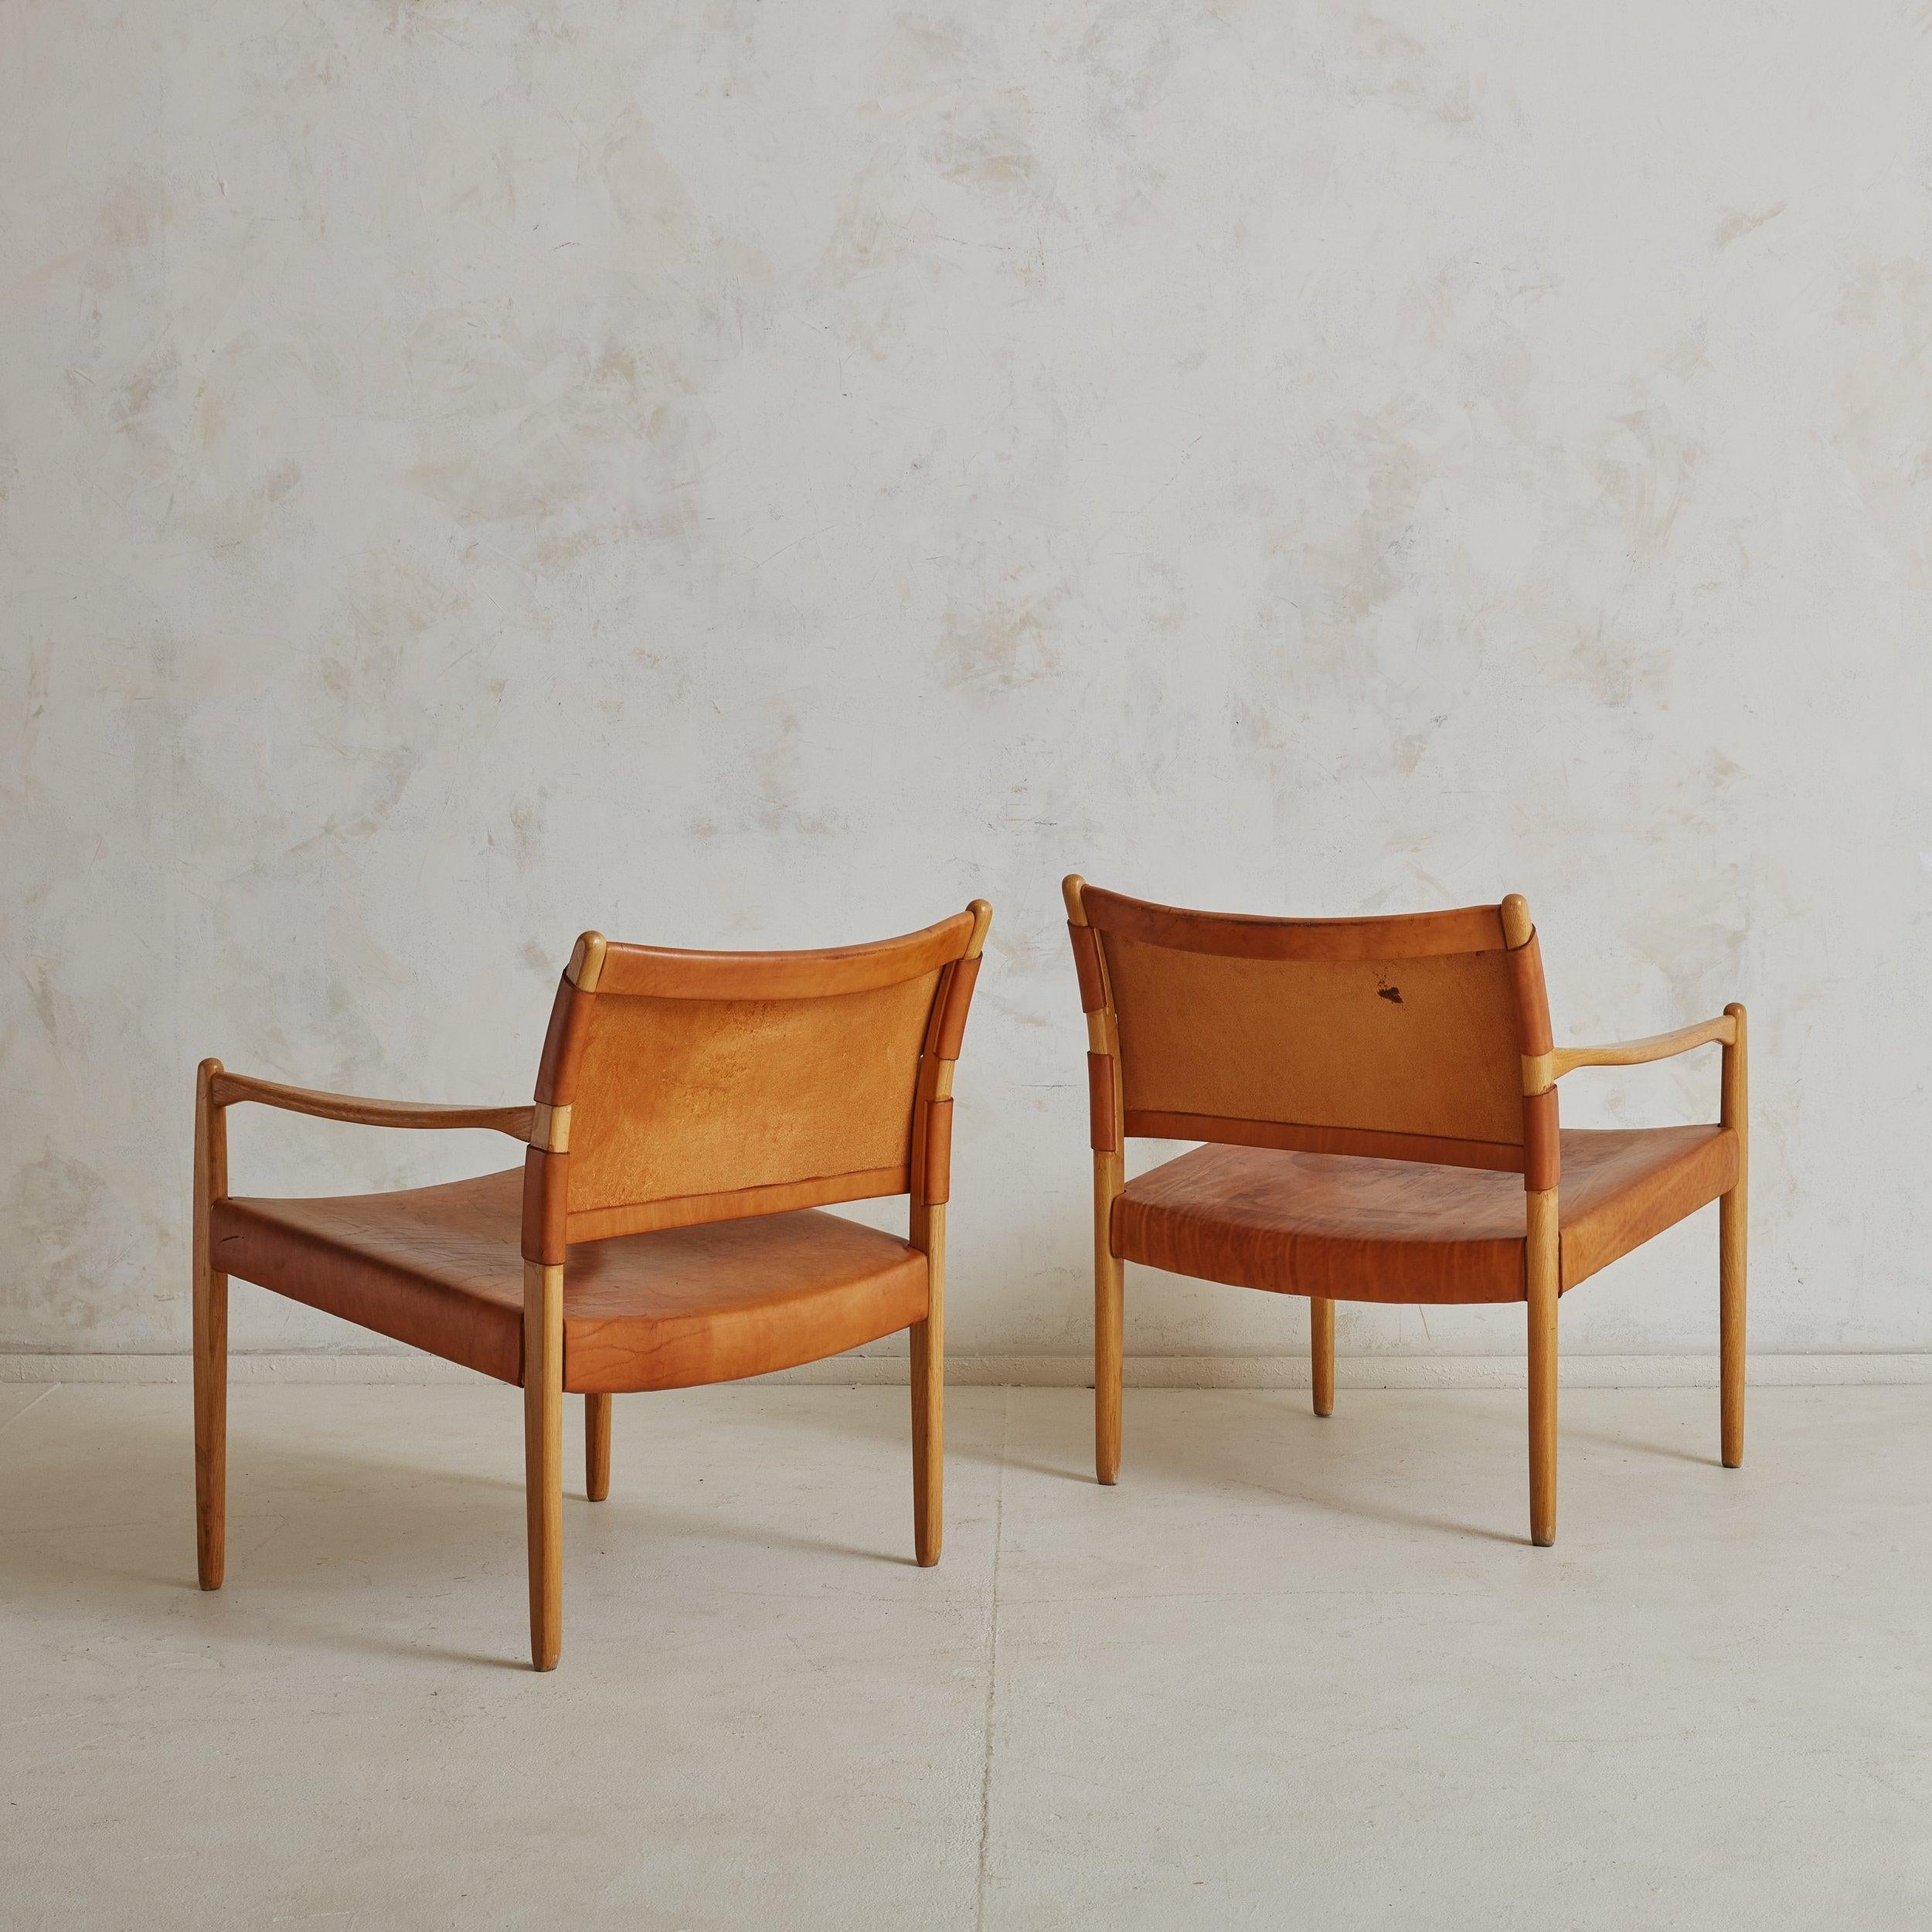 Paire de fauteuils 'Premiär 69' en chêne et cuir, conçus par Per-Olof Scotte pour Ikea en 1967. Ces fauteuils modernes suédois sont dotés d'une structure minimaliste en chêne massif, d'une assise en cuir de selle patiné cognac et d'un dossier